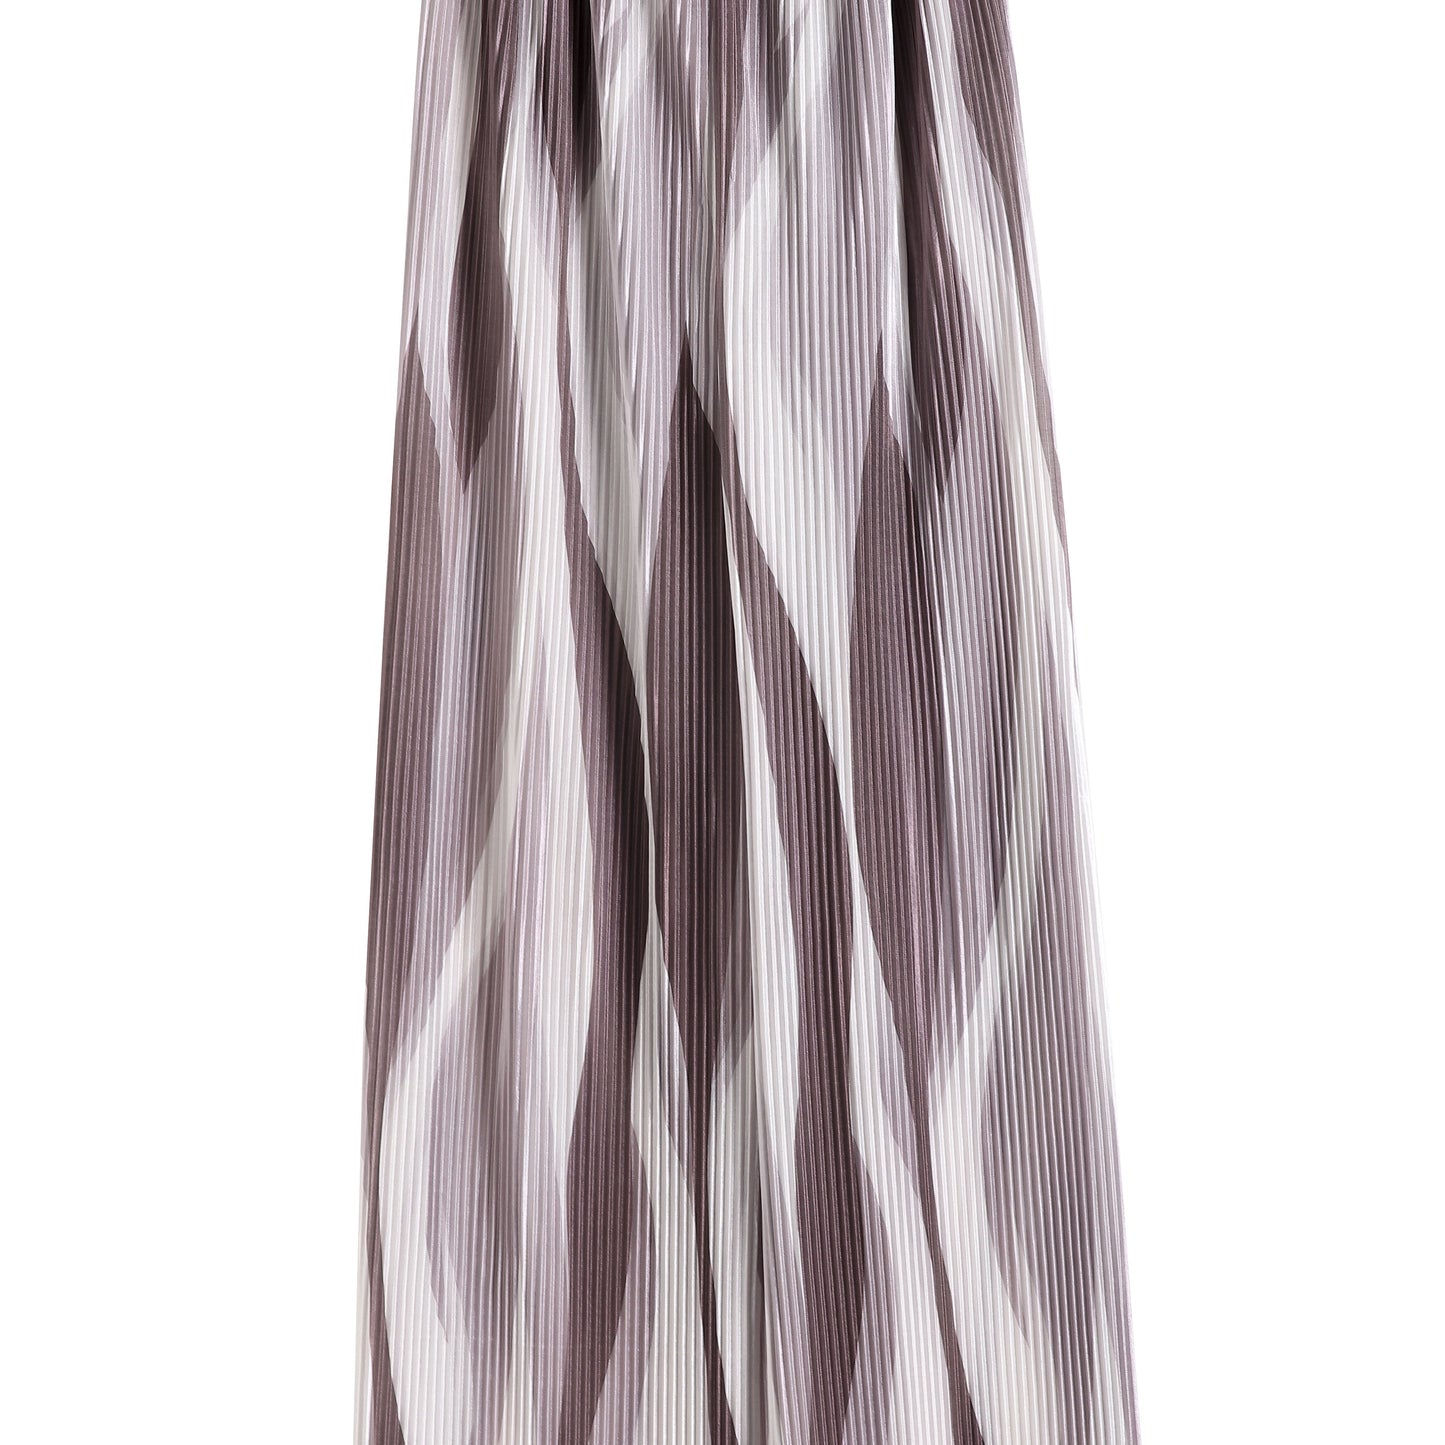 بنطلونات حريرية طويلة ملونة بتقنية ربط الصباغة، بتصميم عادي ذو خصر عالٍ وتجاعيد مستقيمة.